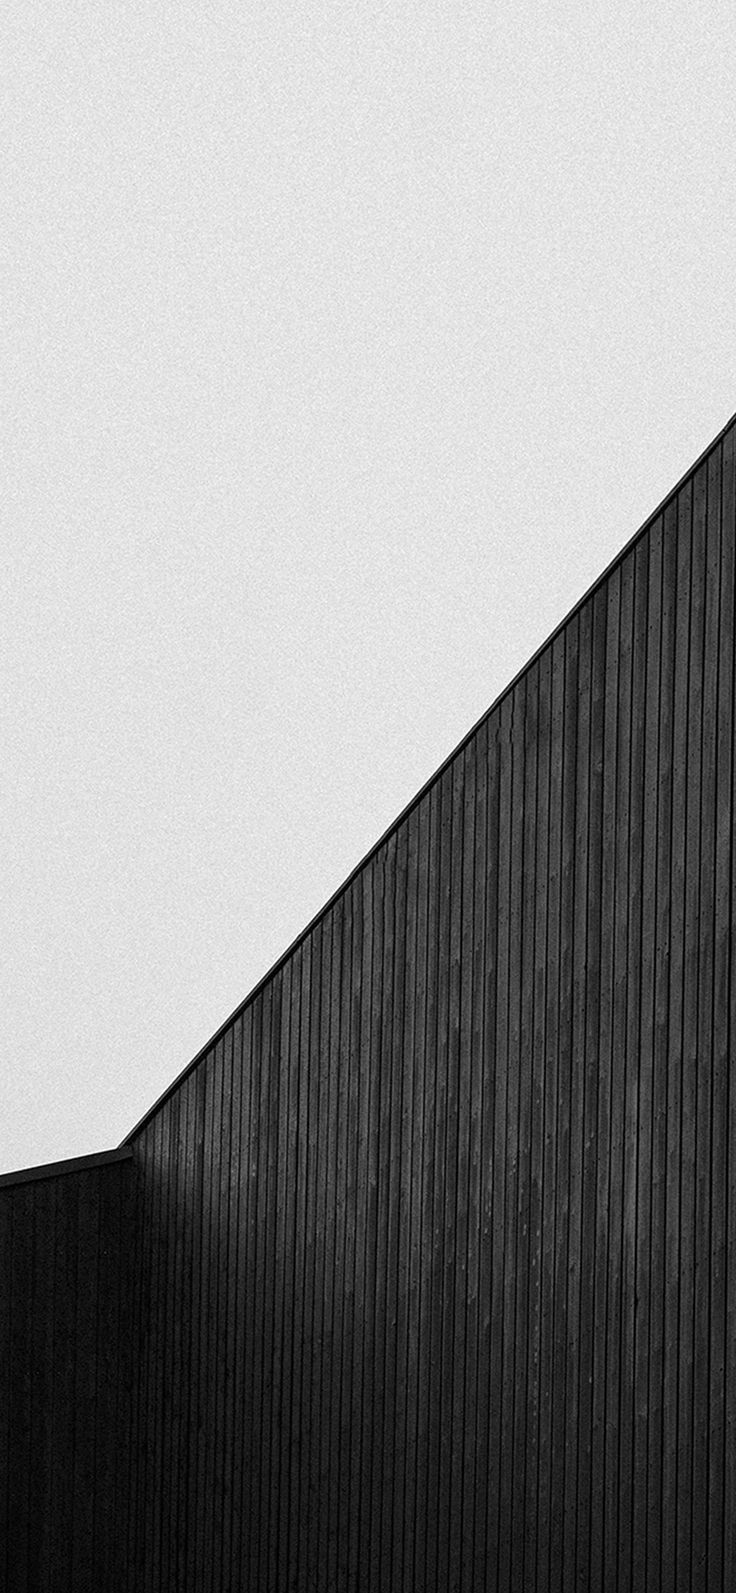 간단한 벽지,하얀,벽,건축물,선,검정색과 흰색